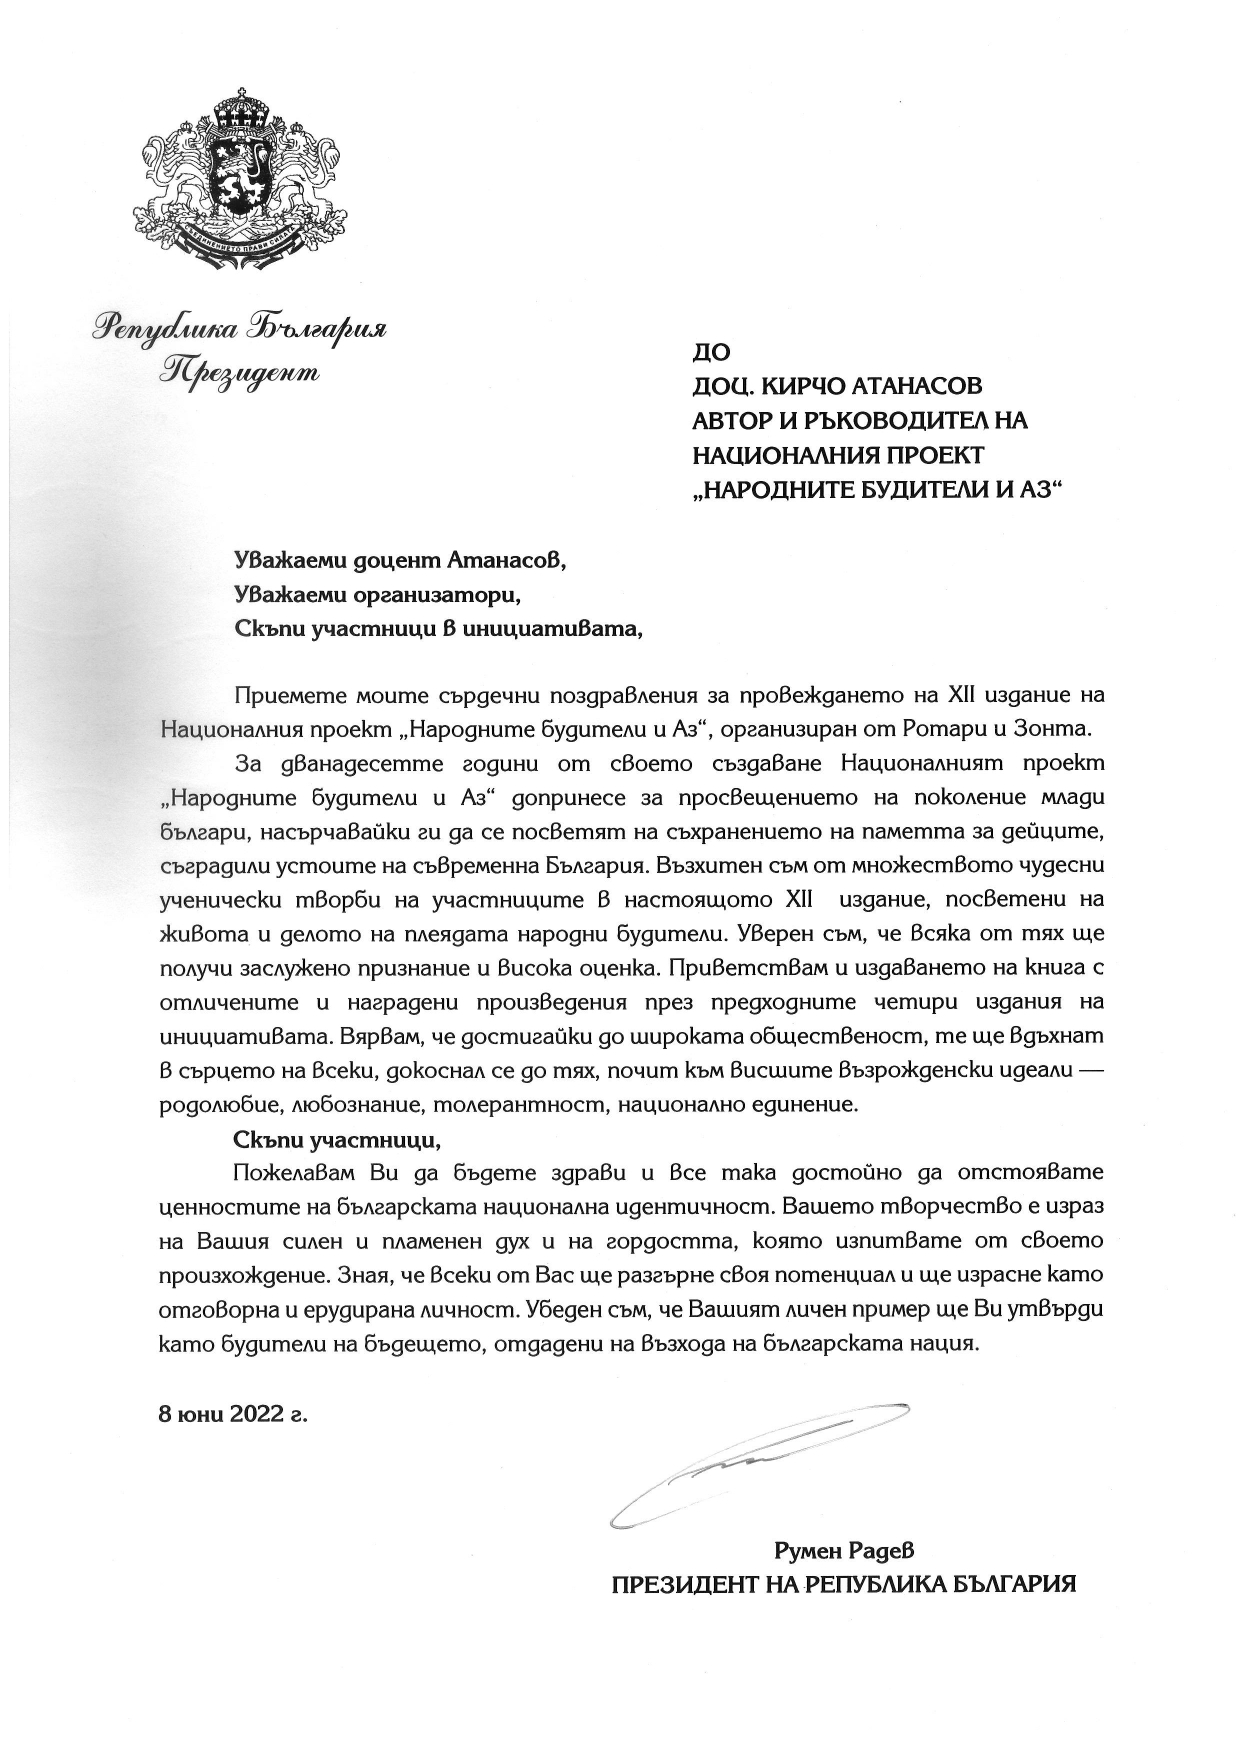 Поздравителен адрес от президента на Република България - Румен Радев